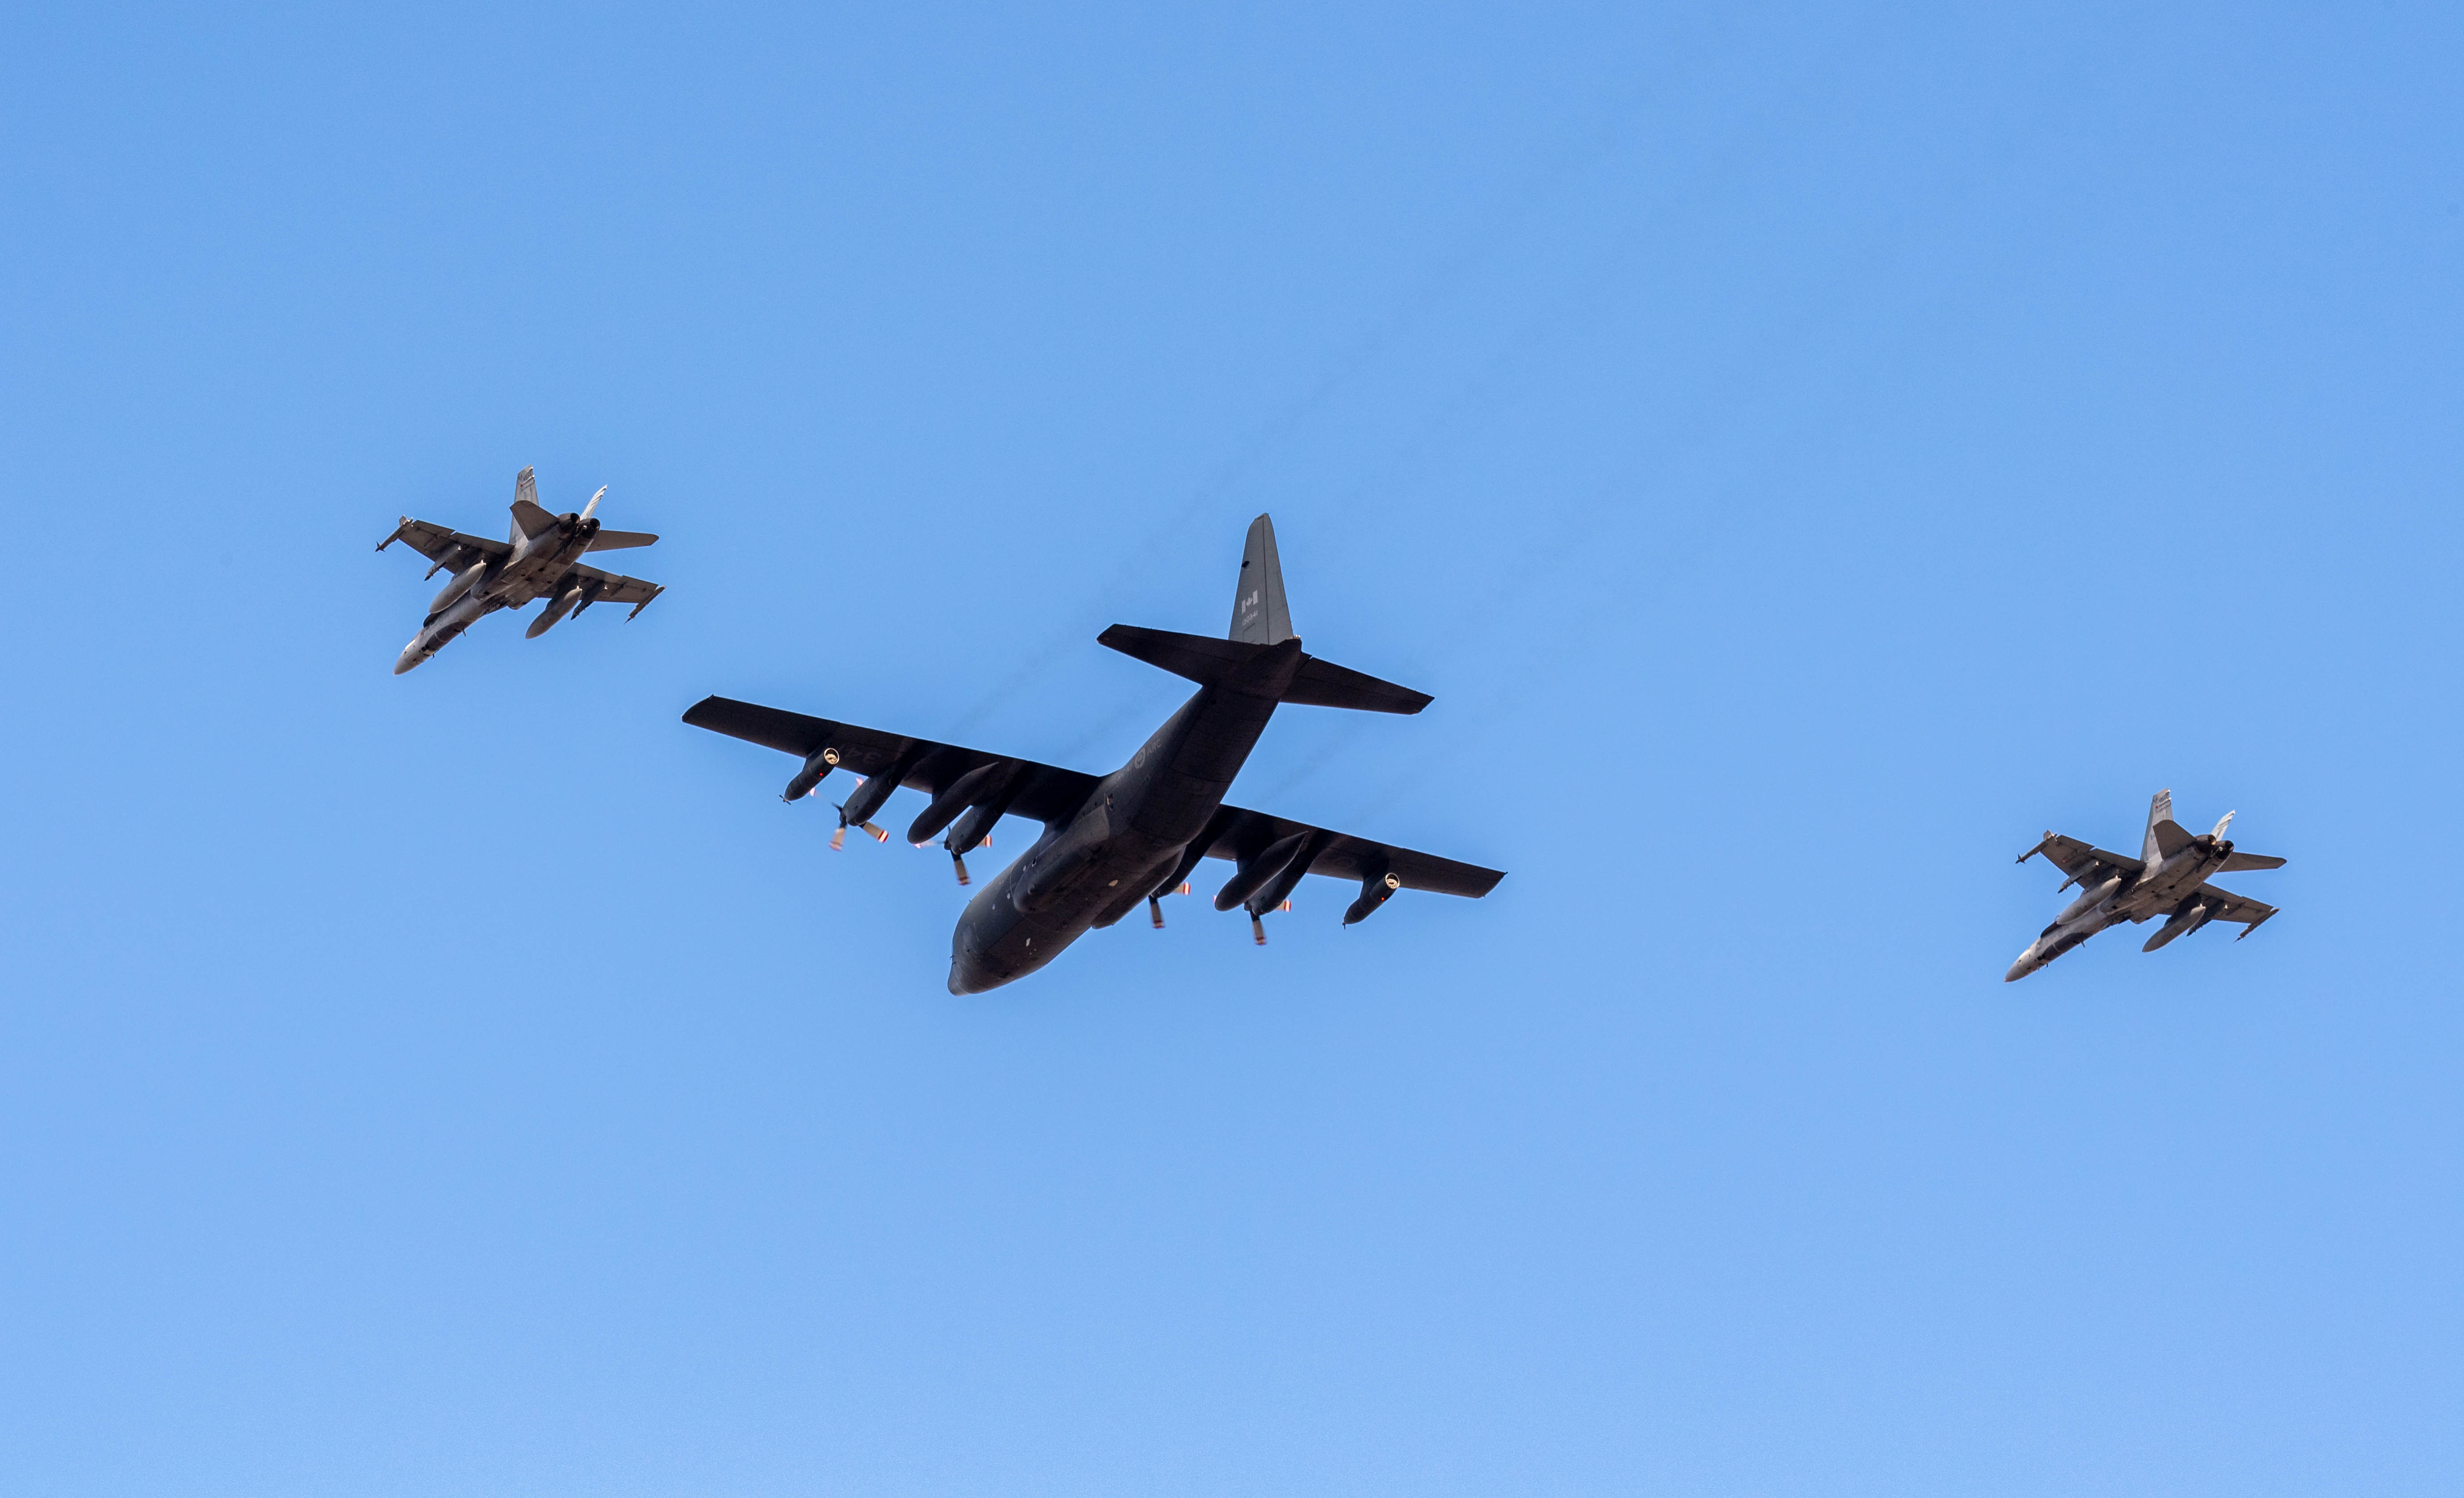 Trois avions volent en formation dans un ciel bleu. L’avion du centre est muni de moteurs à hélice et est beaucoup plus gros que les deux autres, des chasseurs à réaction.